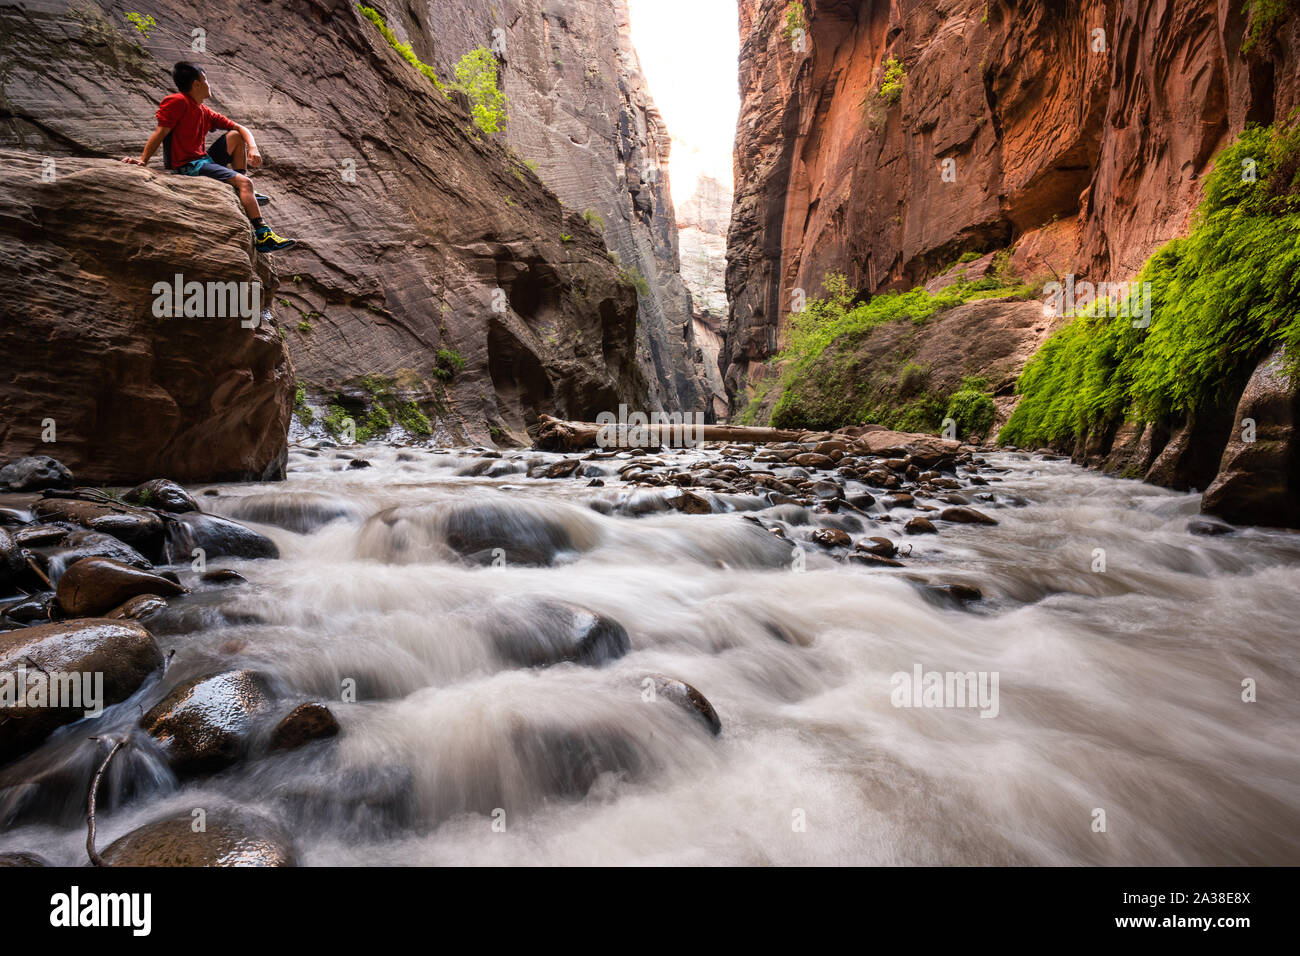 Promeneur assis sur un rocher dans la fente, le Canyon se rétrécit, Zion National Park, Utah, United States Banque D'Images